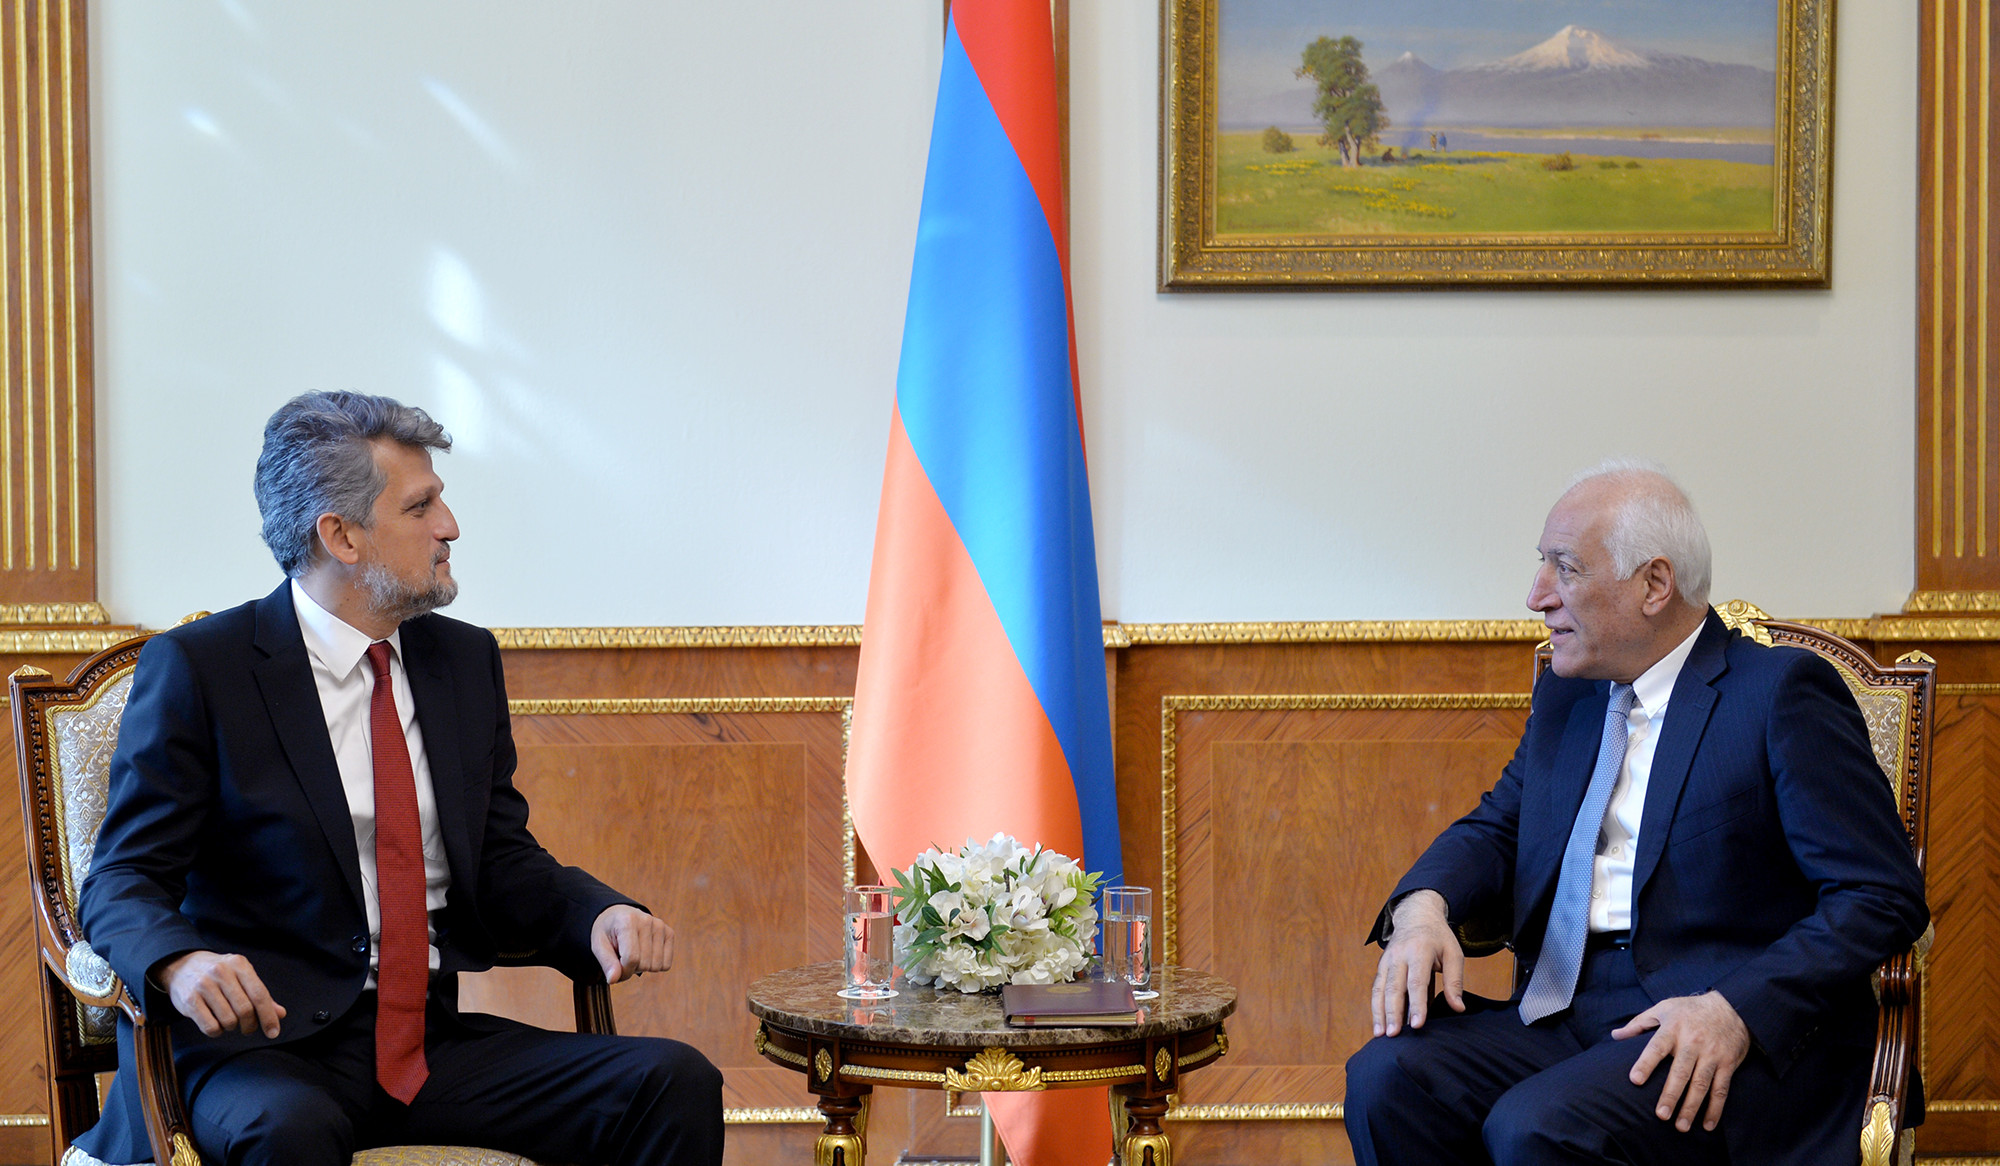 President Vahagn Khachaturyan received Garo Paylan